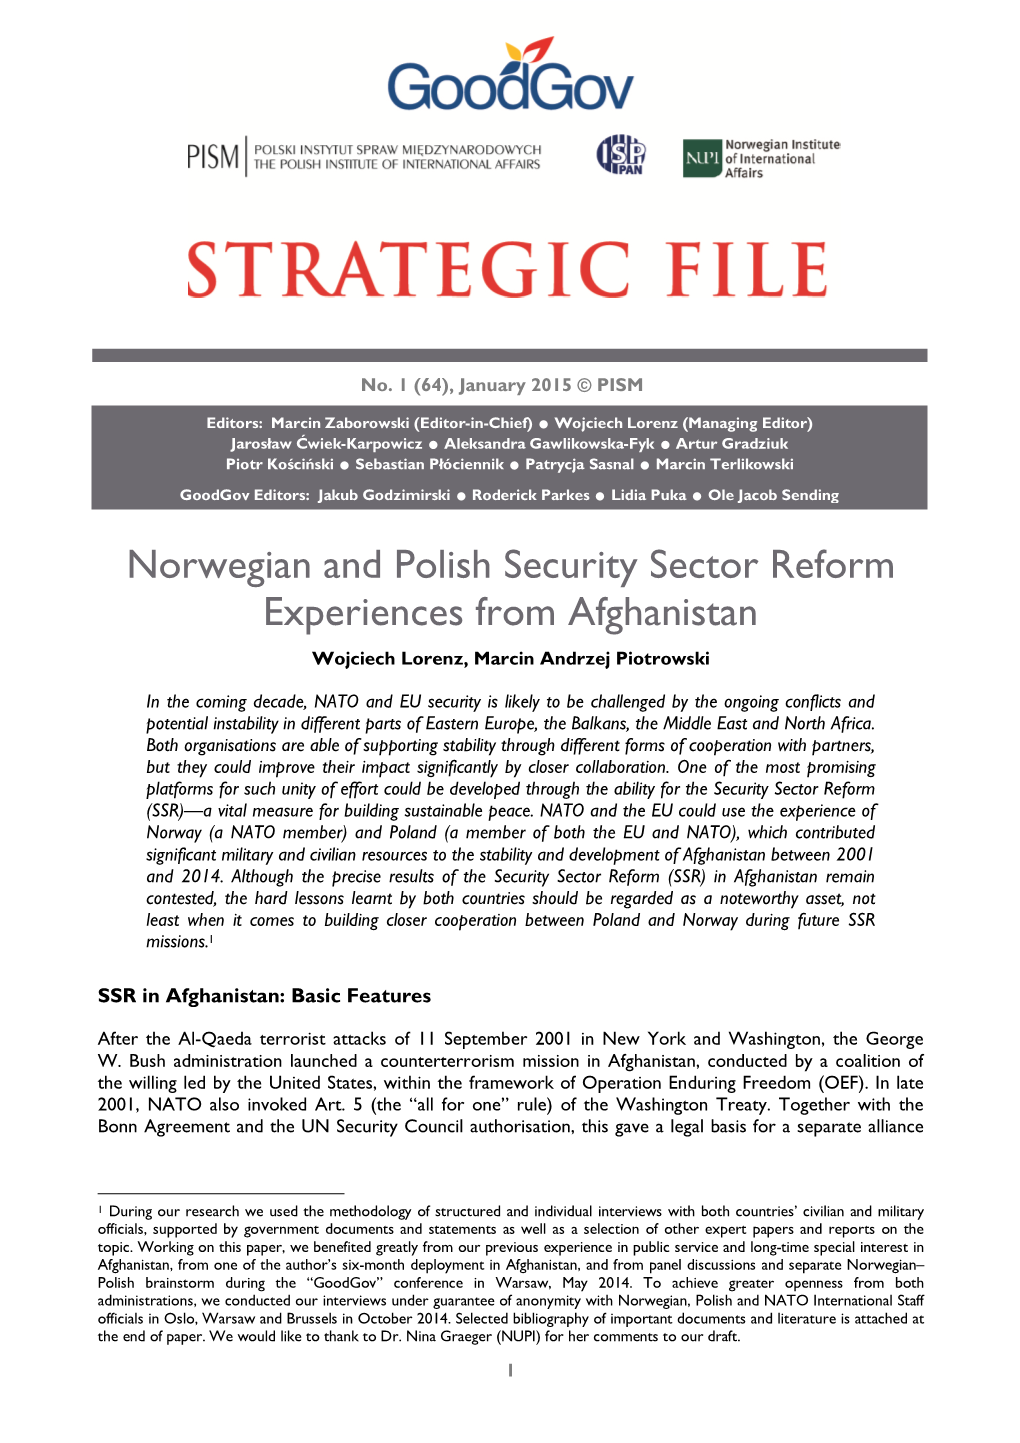 Norwegian and Polish Security Sector Reform Experiences from Afghanistan Wojciech Lorenz, Marcin Andrzej Piotrowski